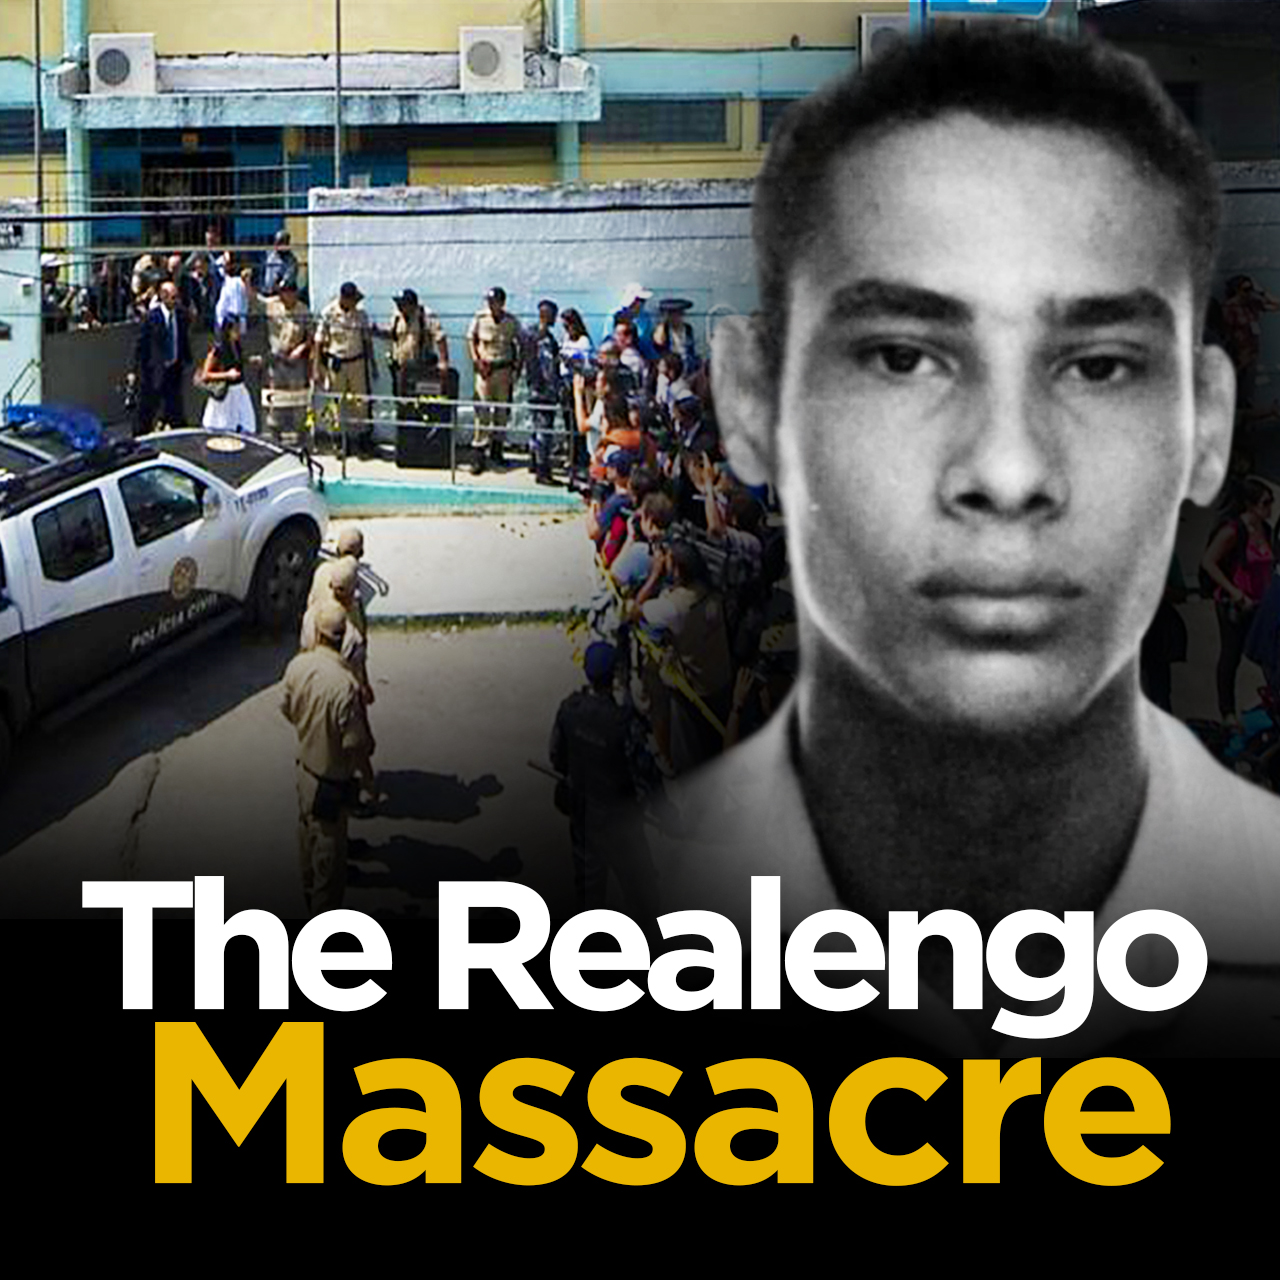 The Realengo Massacre (Rio de Janeiro, Brazil)